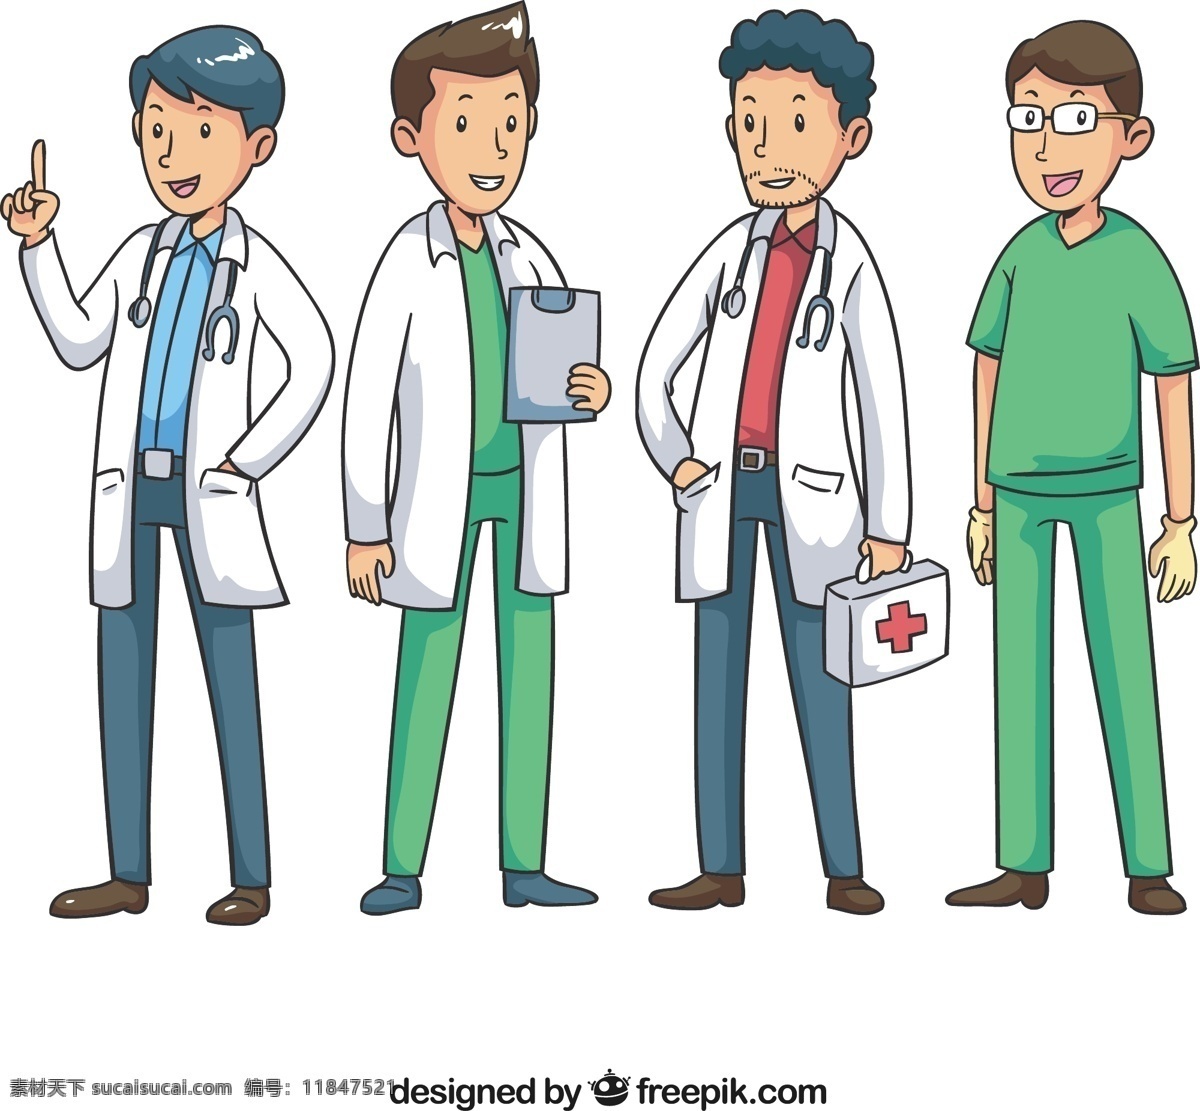 有趣 不同 类型 医生 手 医疗 人 卡通 手绘 健康 科学 微笑 快乐 医院 医学 绘画 白色 实验室 护理 医疗保健